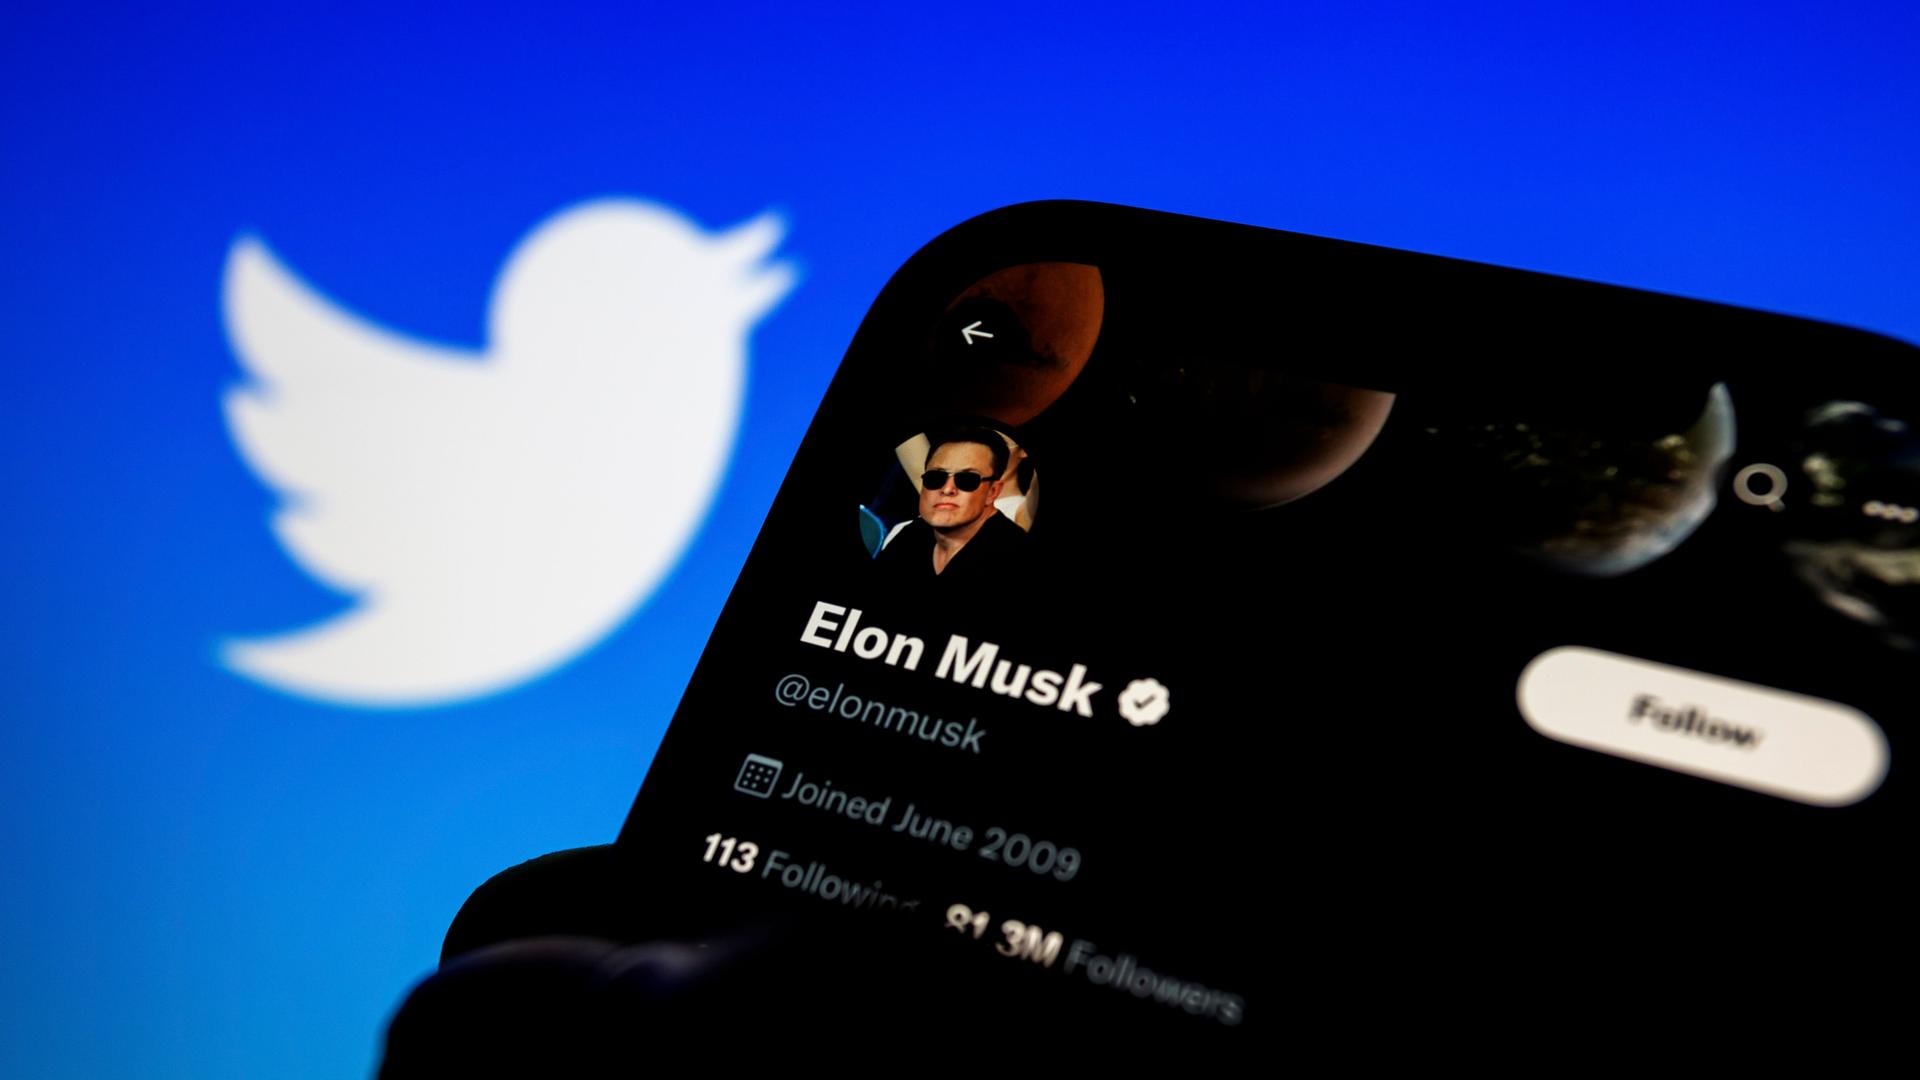 Symbolbild: Ein Smartphone mit dem Bild von Elon Musk auf dem Bildschirm, im Hintergrund das Logo der Plattform "Twitter".